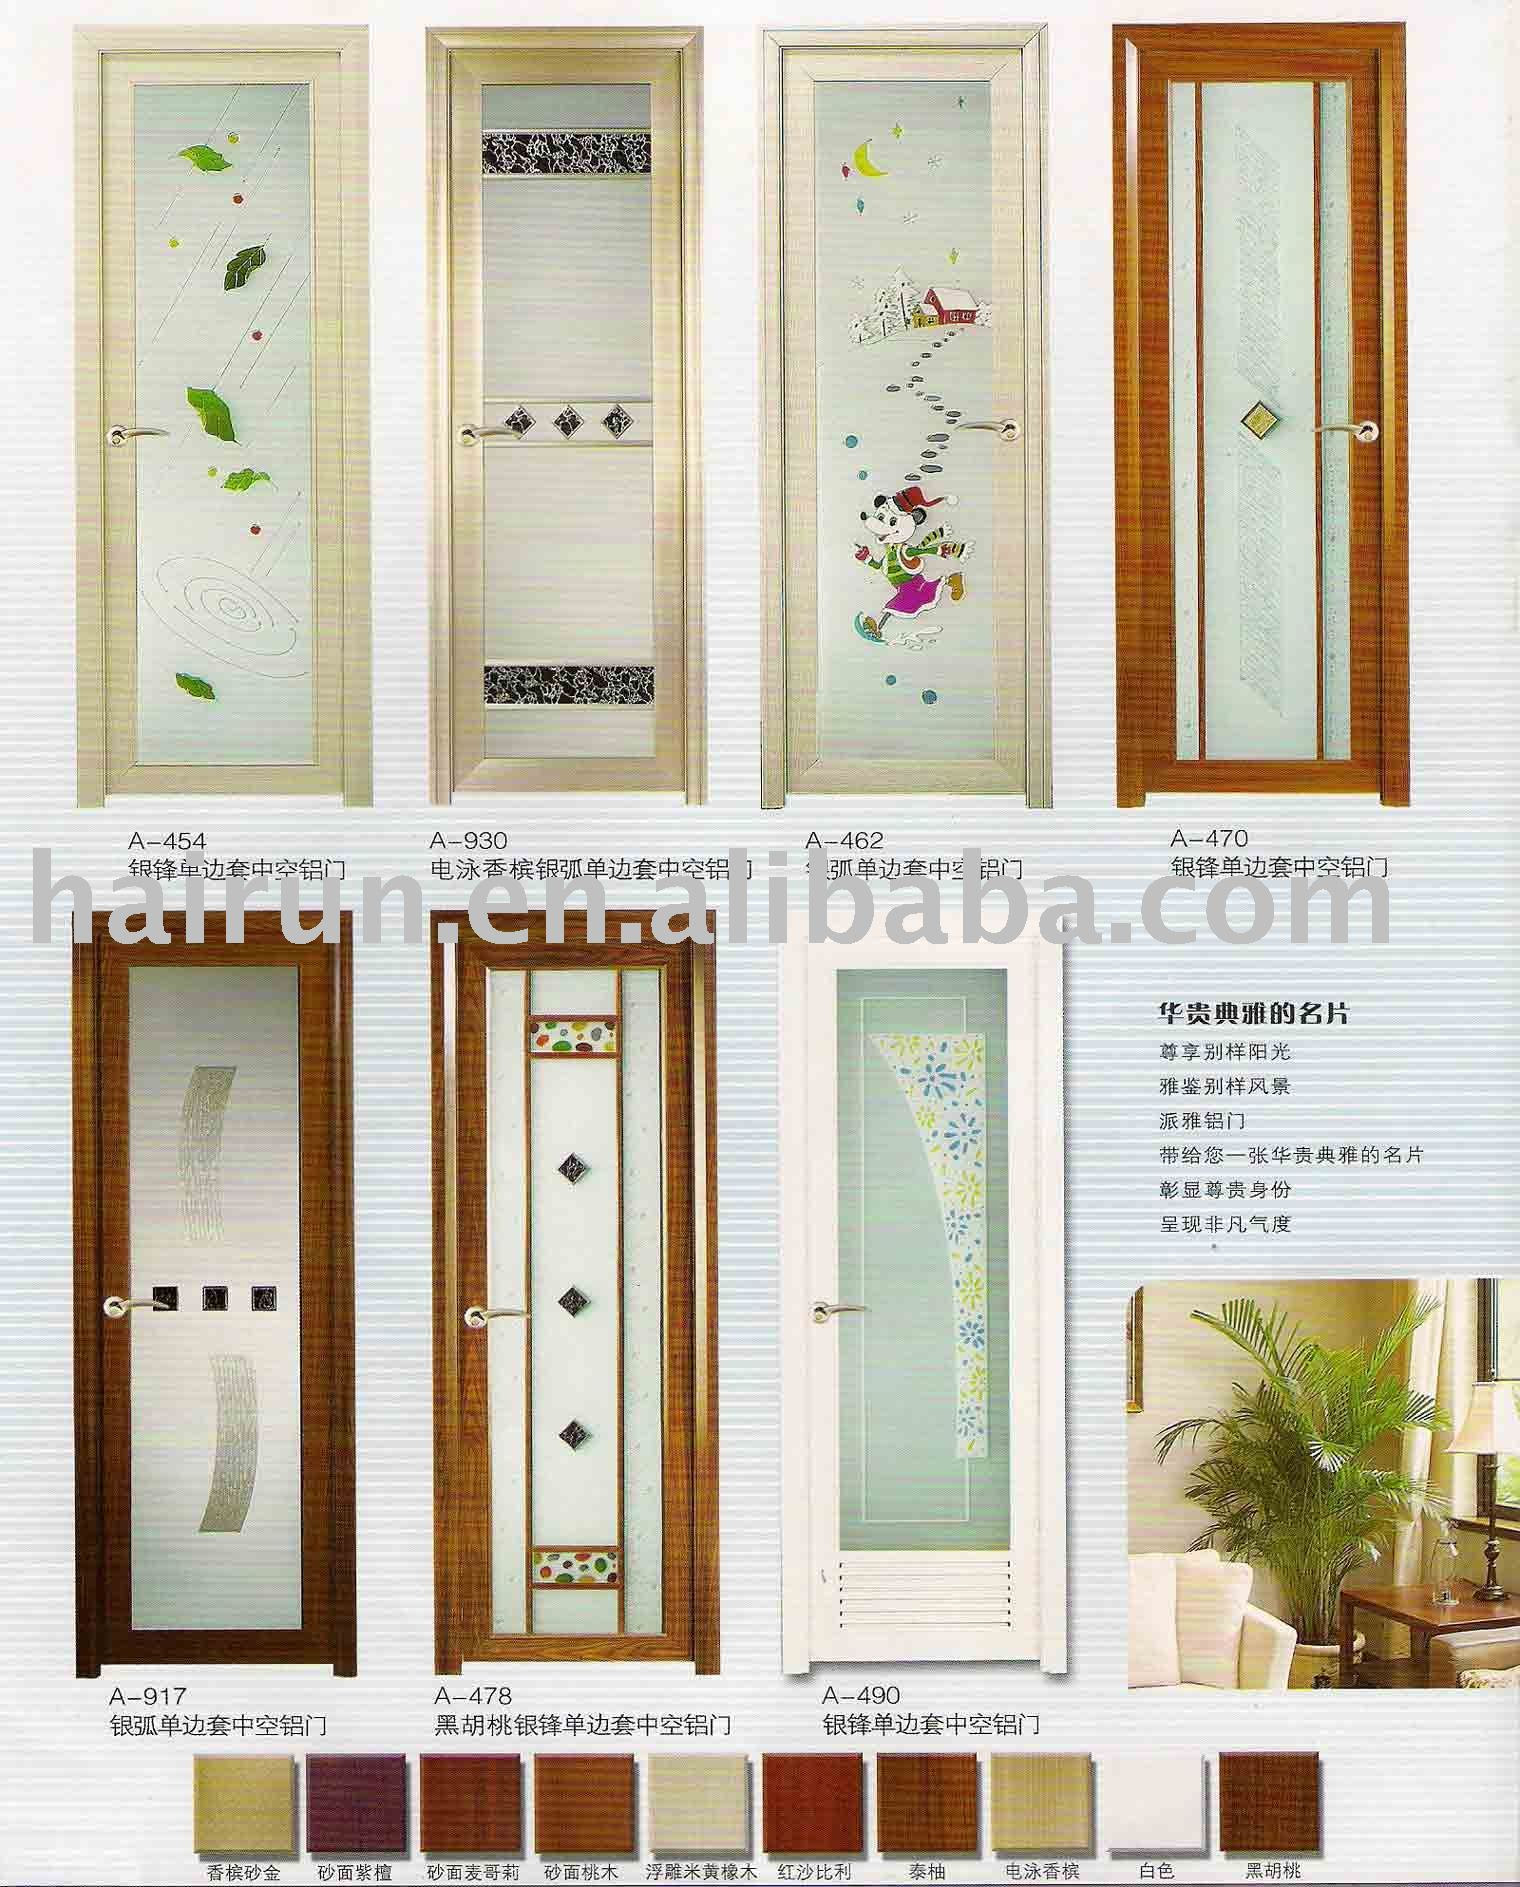 Trends For Bathroom Door Design Images